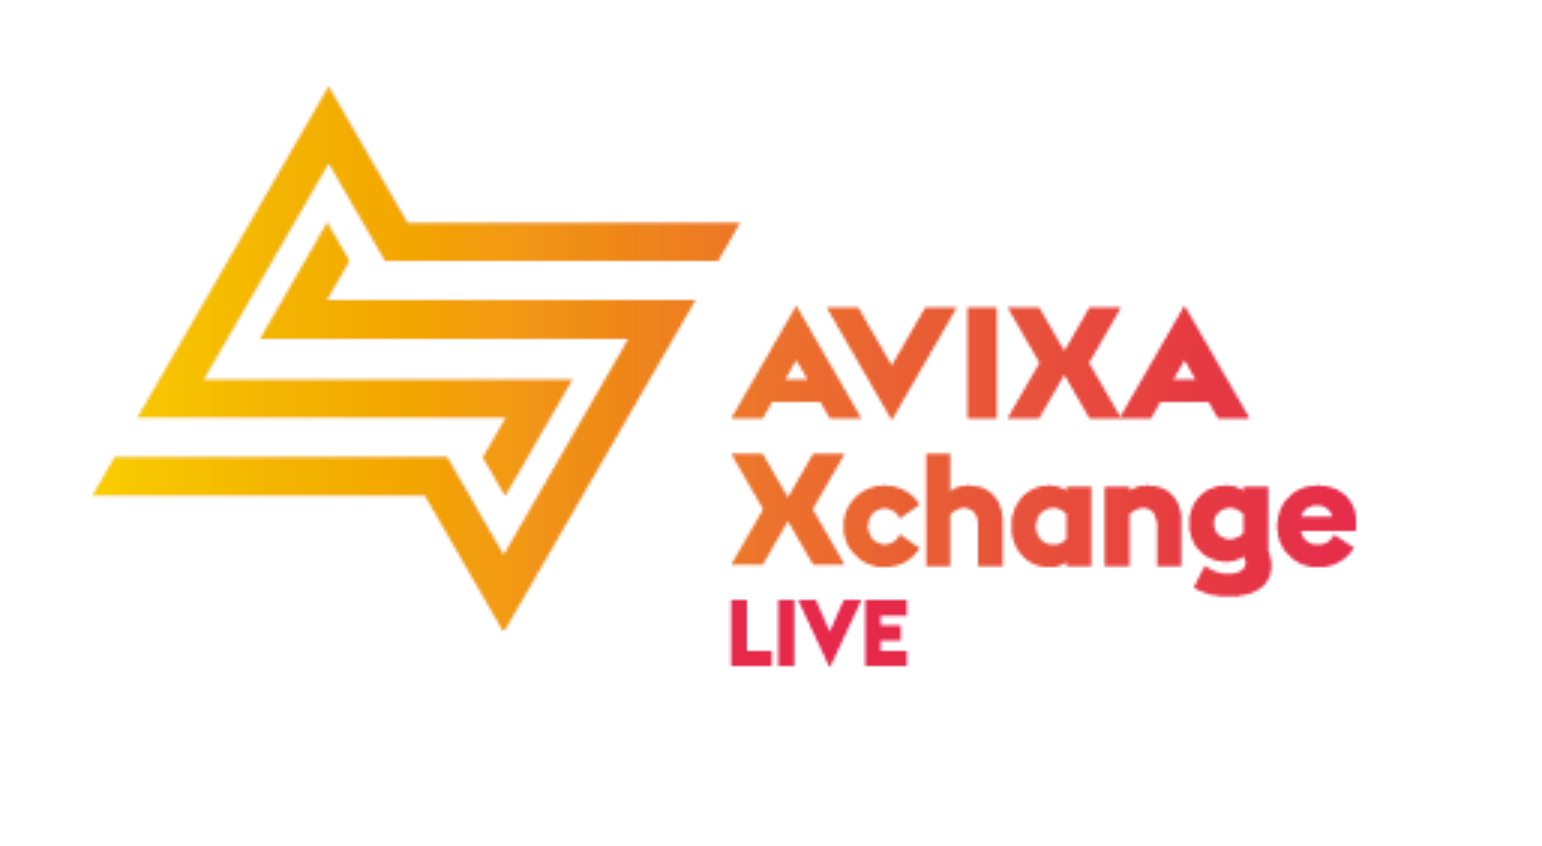 AVIXA Xchange LIVE